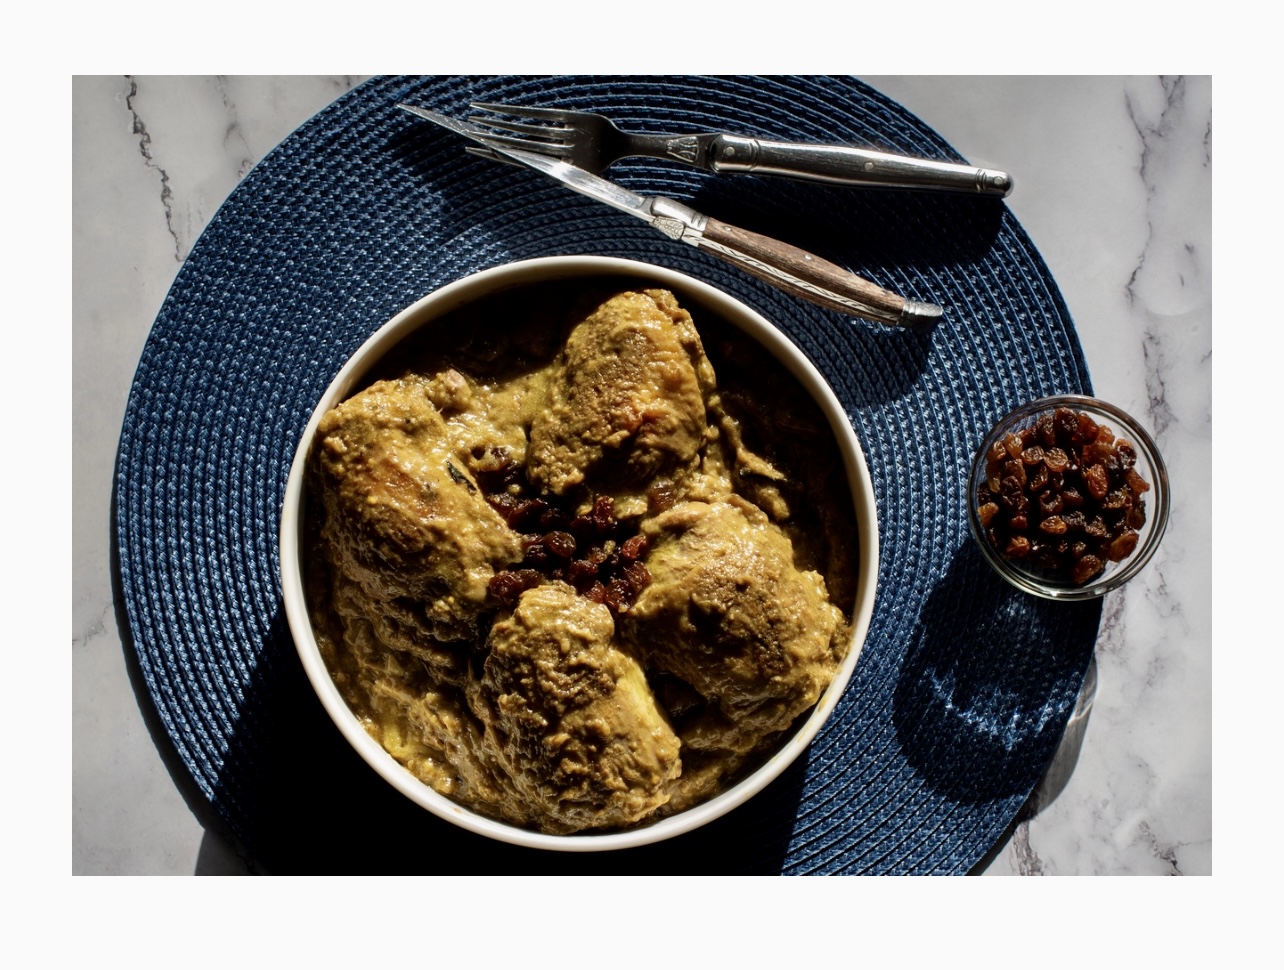 Recettes : Un bol de poulet et de raisins secs sur une assiette bleue.